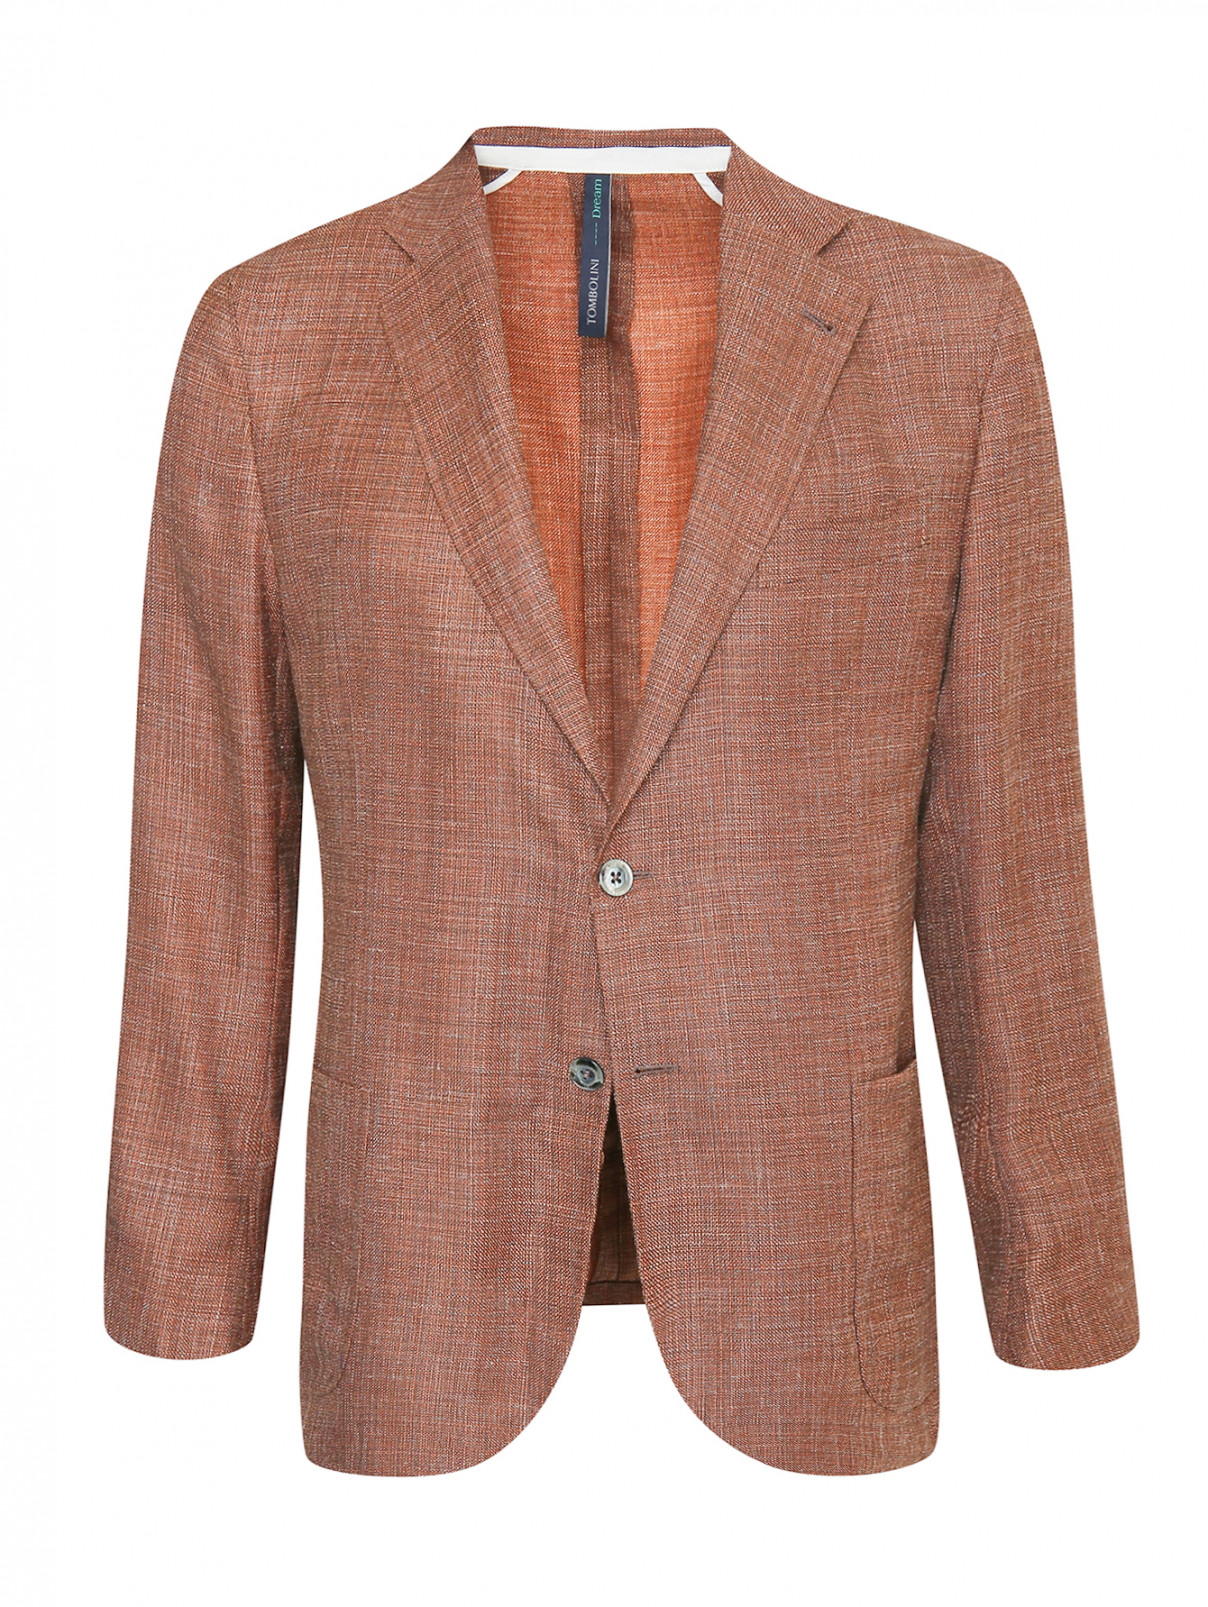 Пиджак из шерсти и шелка Tombolini  –  Общий вид  – Цвет:  Коричневый